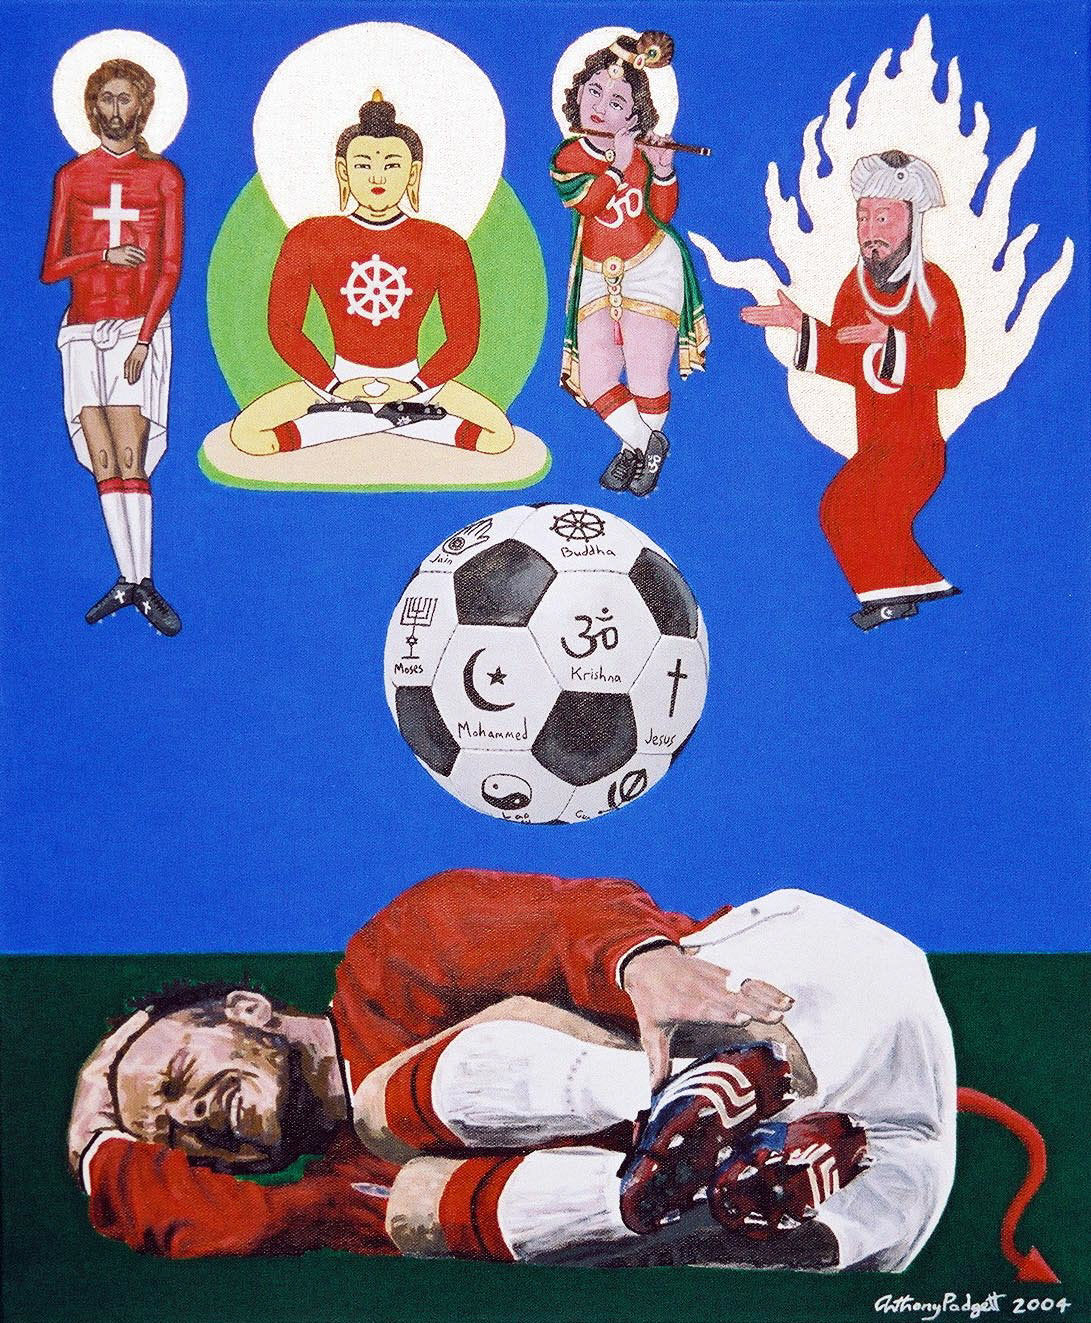 God Utd 4 Man Utd 0 - by Anthony D Padgett 2004